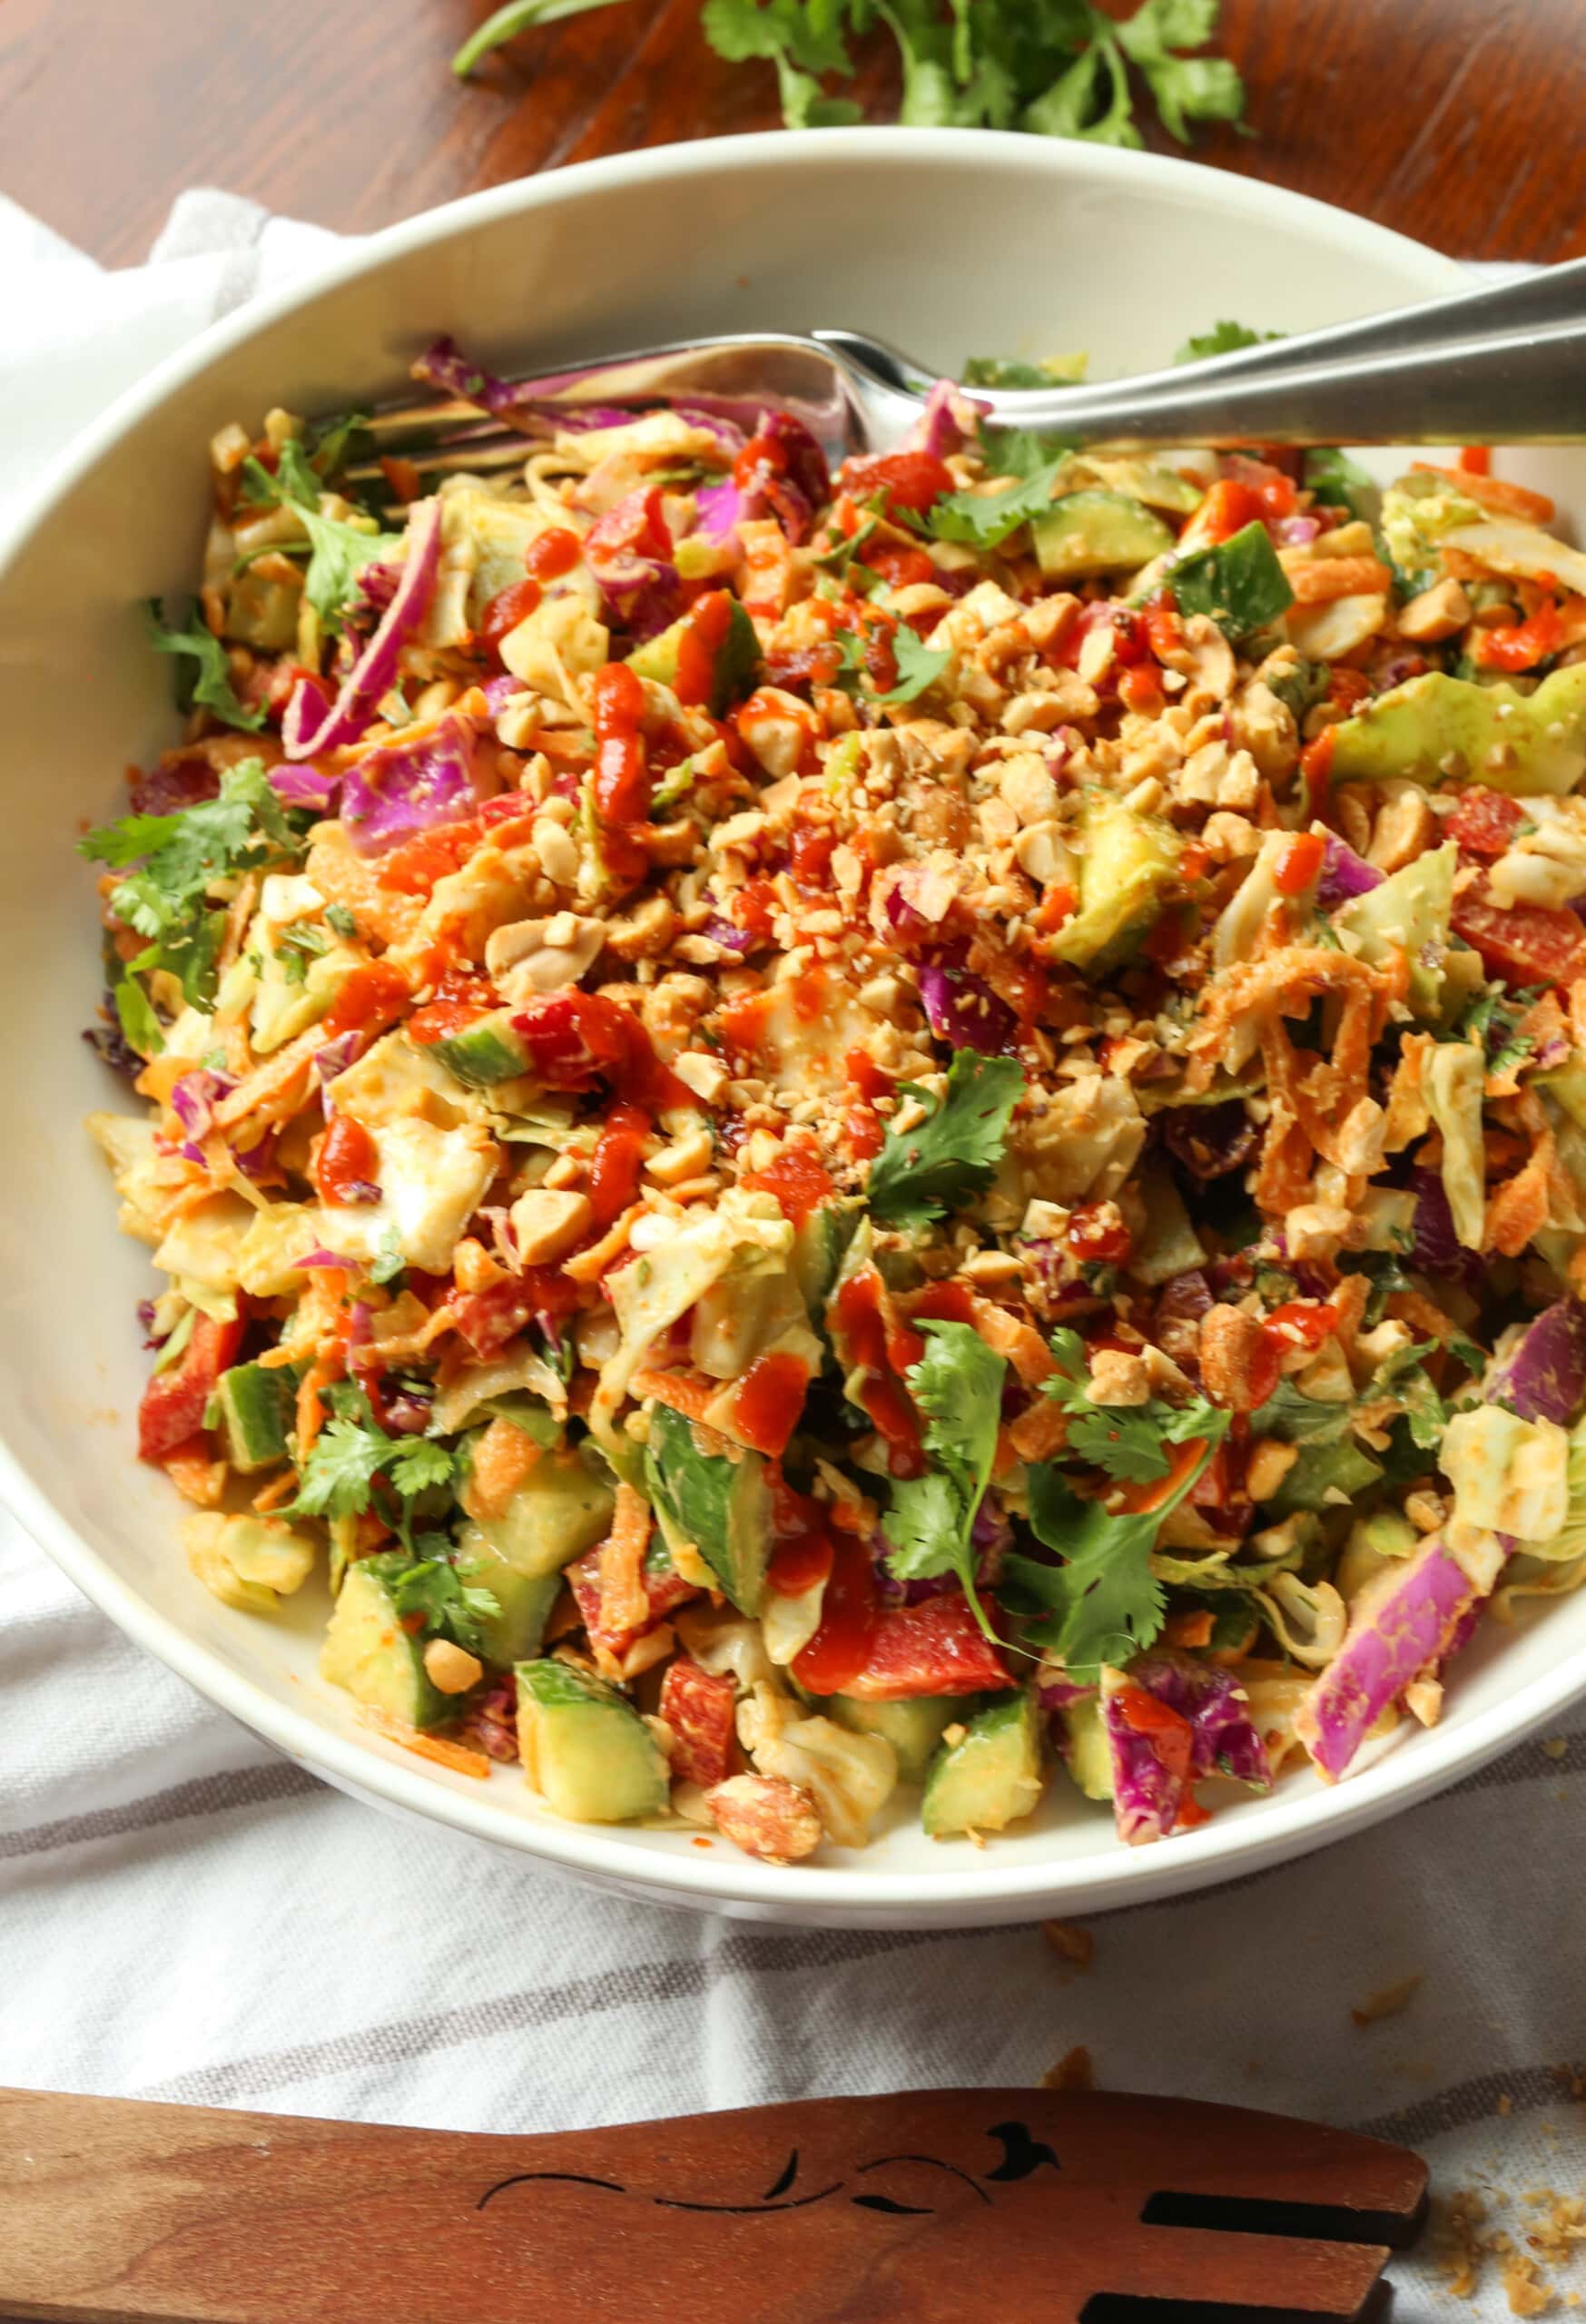 Regenbogen-Crunch-Salat in einer großen weißen Schüssel mit einer Gabel.